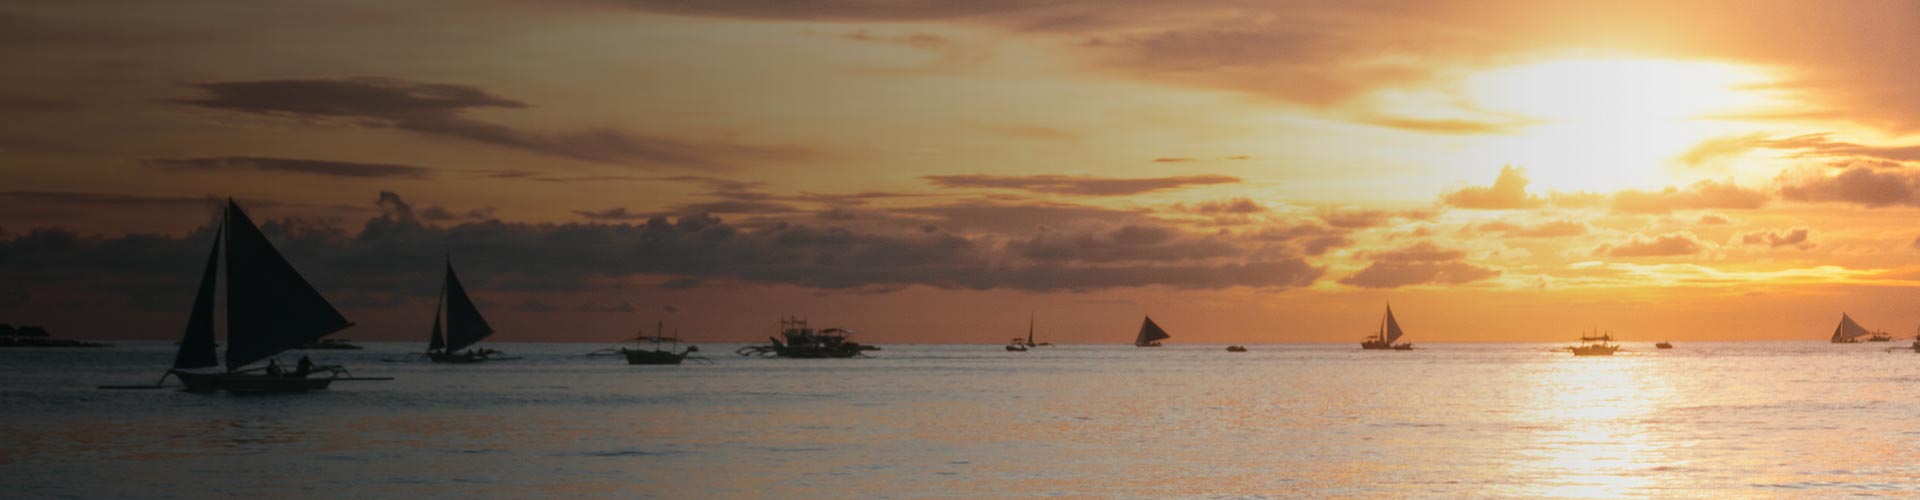 Båtar ute på havet vid solnedgång